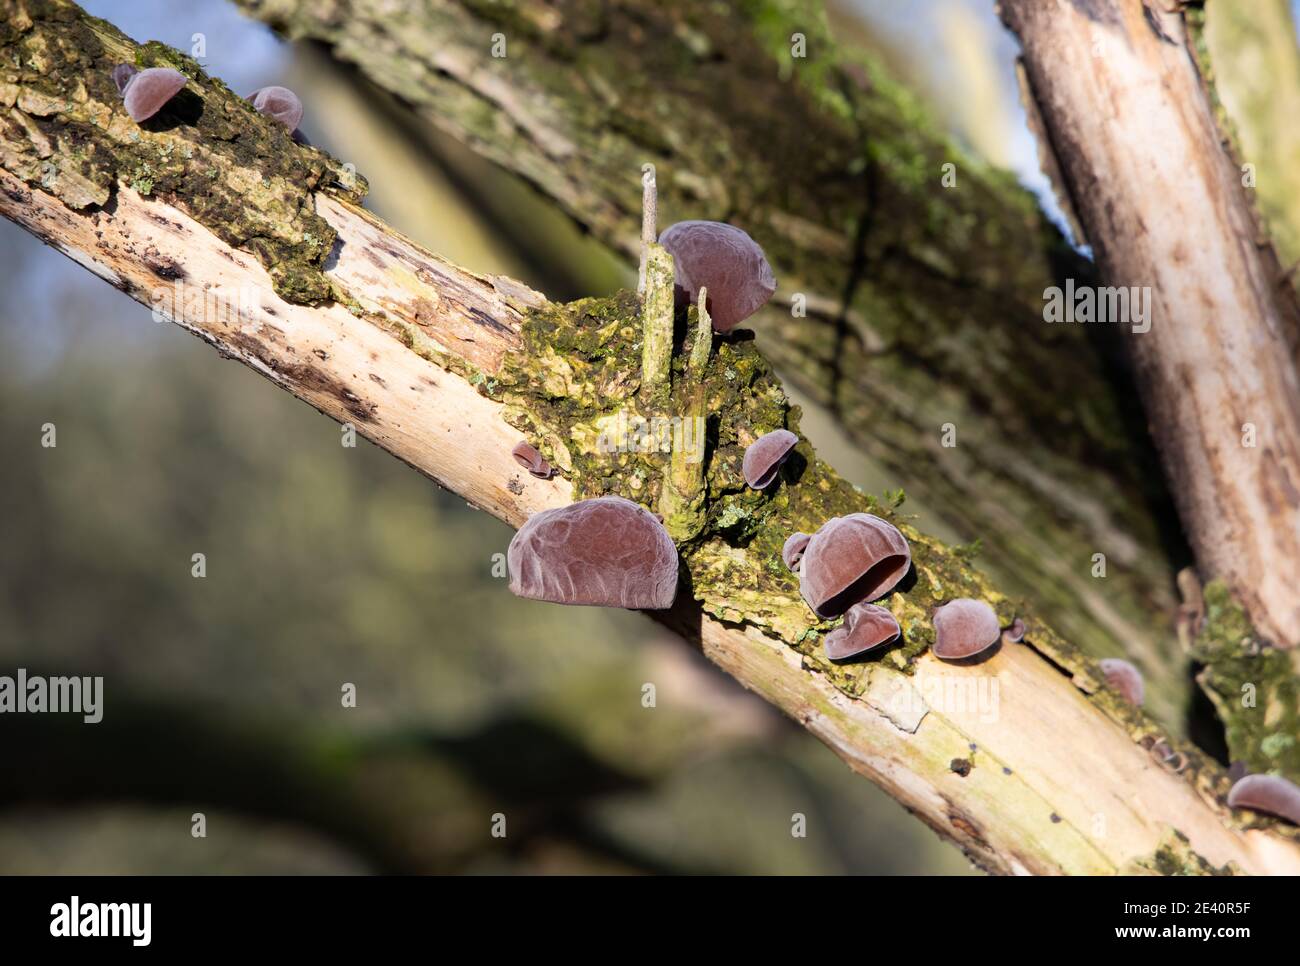 Crick, Northamptonshire - 21/01/21: Spighe di legno funghi (Auricularia auricula-judae) che crescono su un ramo di albero anziano in decadimento. Foto Stock